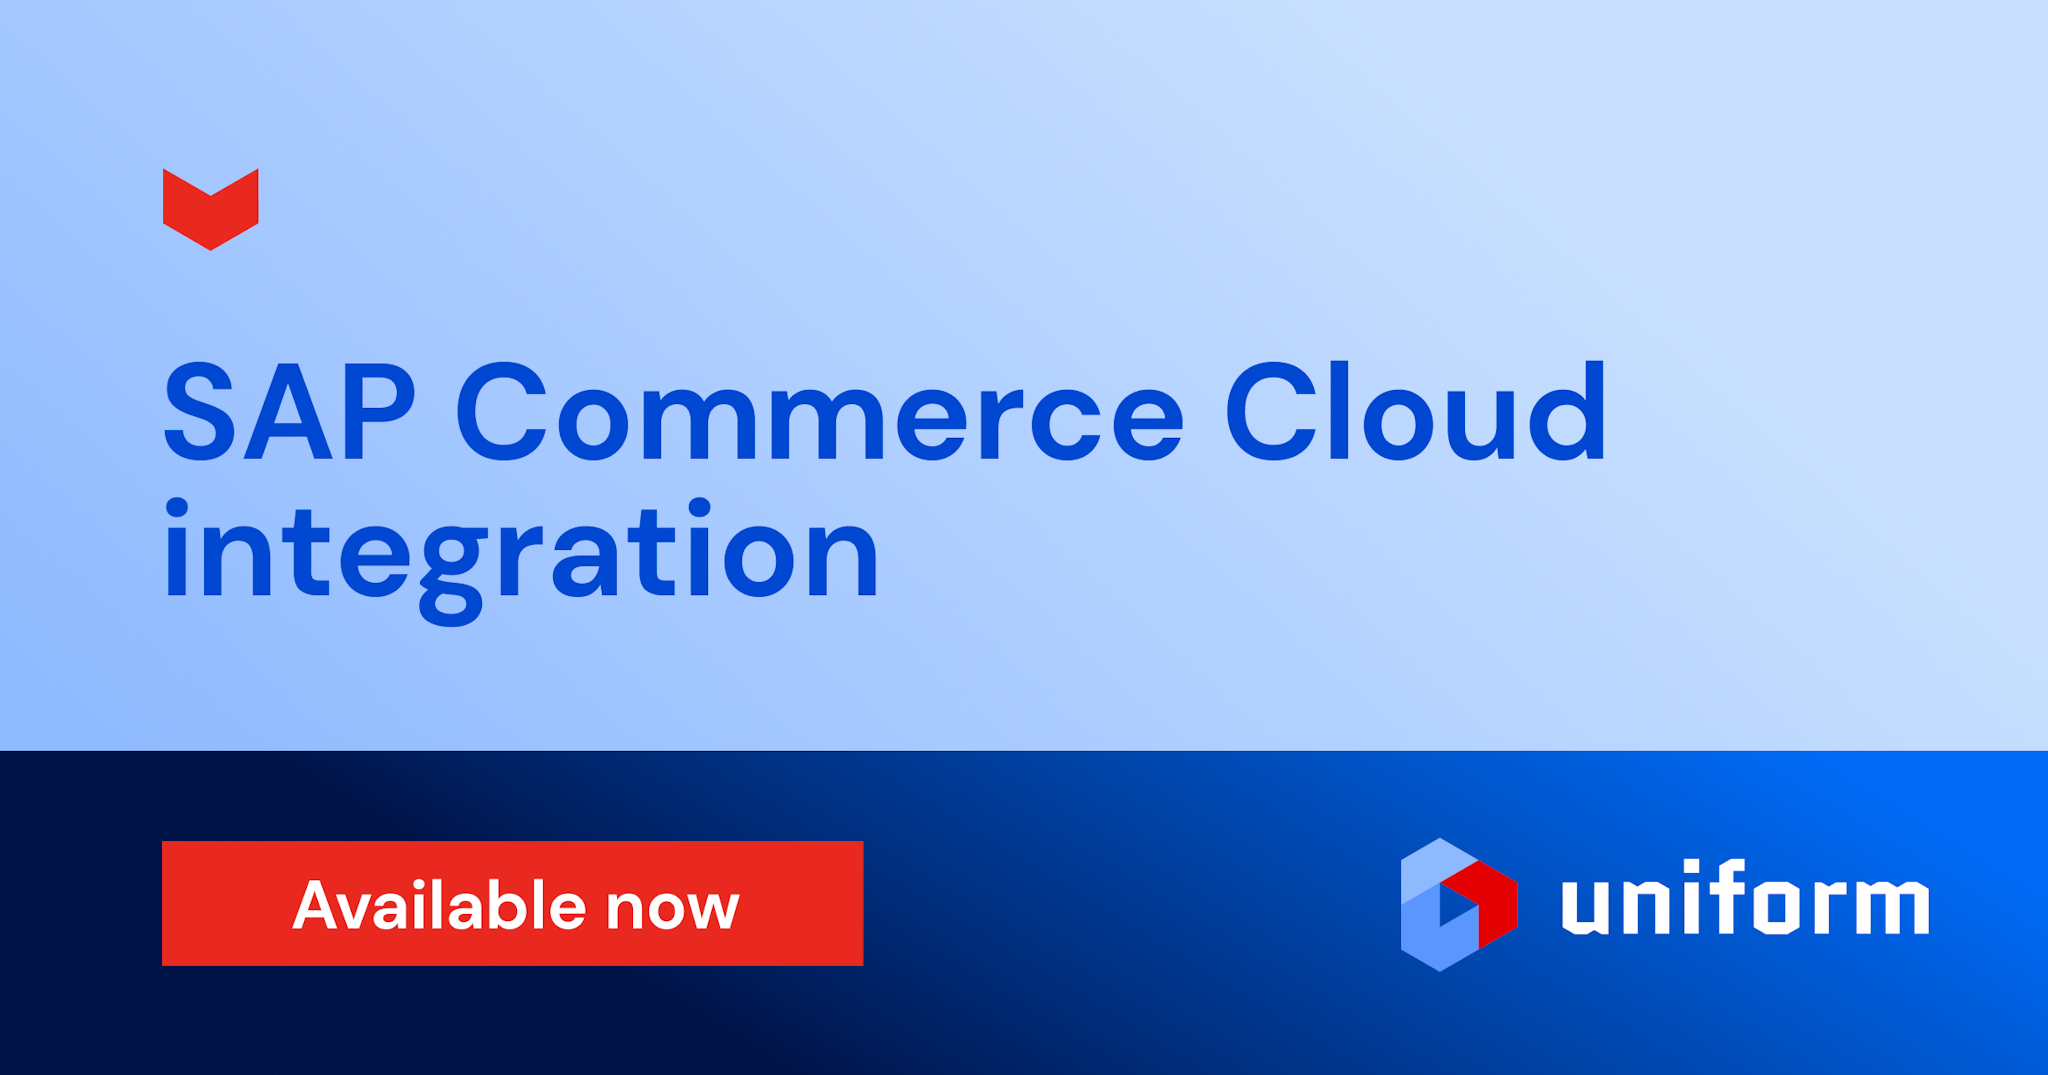 SAP Commerce Cloud integration